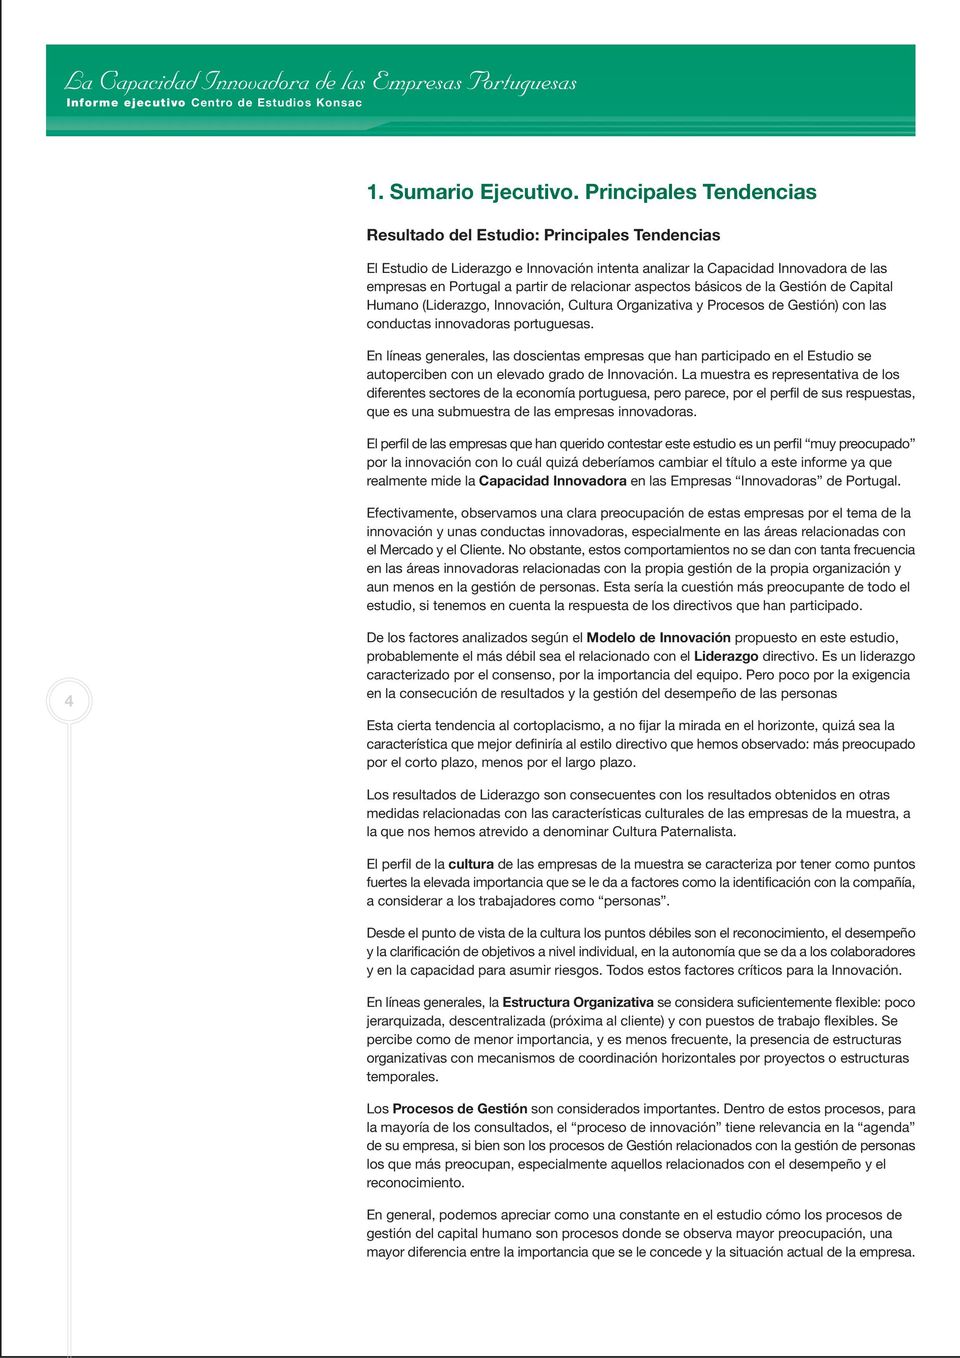 aspectos básicos de la Gestión de Capital Humano (Liderazgo, Innovación, Cultura Organizativa y Procesos de Gestión) con las conductas innovadoras portuguesas.